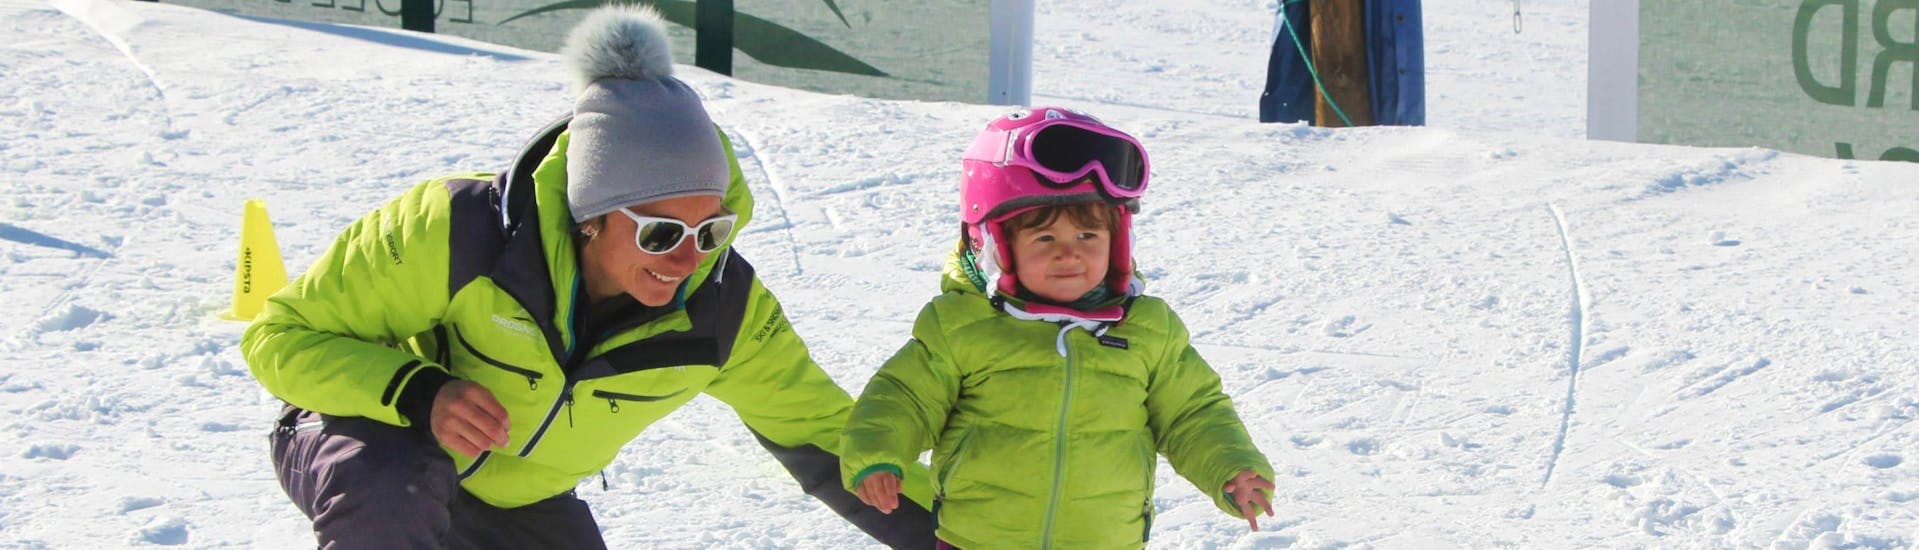 Un enfant apprend à skier pendant son Cours de ski Enfants "Petits Ours" (3-4 ans) - Max 6 par groupe avec Prosneige Méribel.